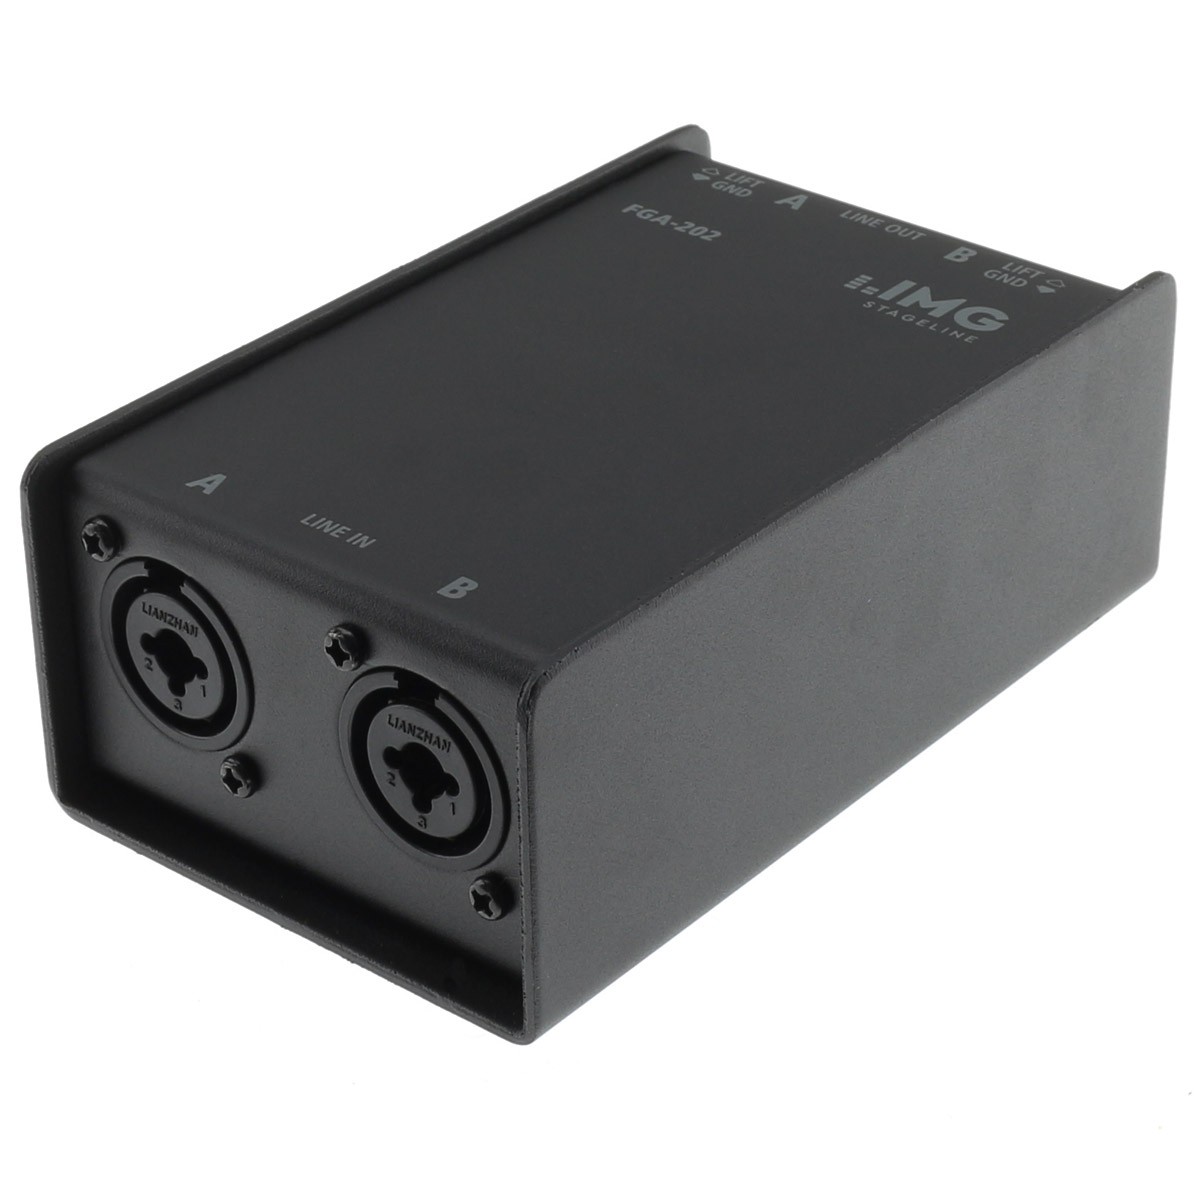 MEIRIYFA 6,35 mm 1/4 câble audio, 6,35 mm trs mâle femelle audio stéréo  instrument rallonge câble en spirale pour amplificateur, Haut - parleur